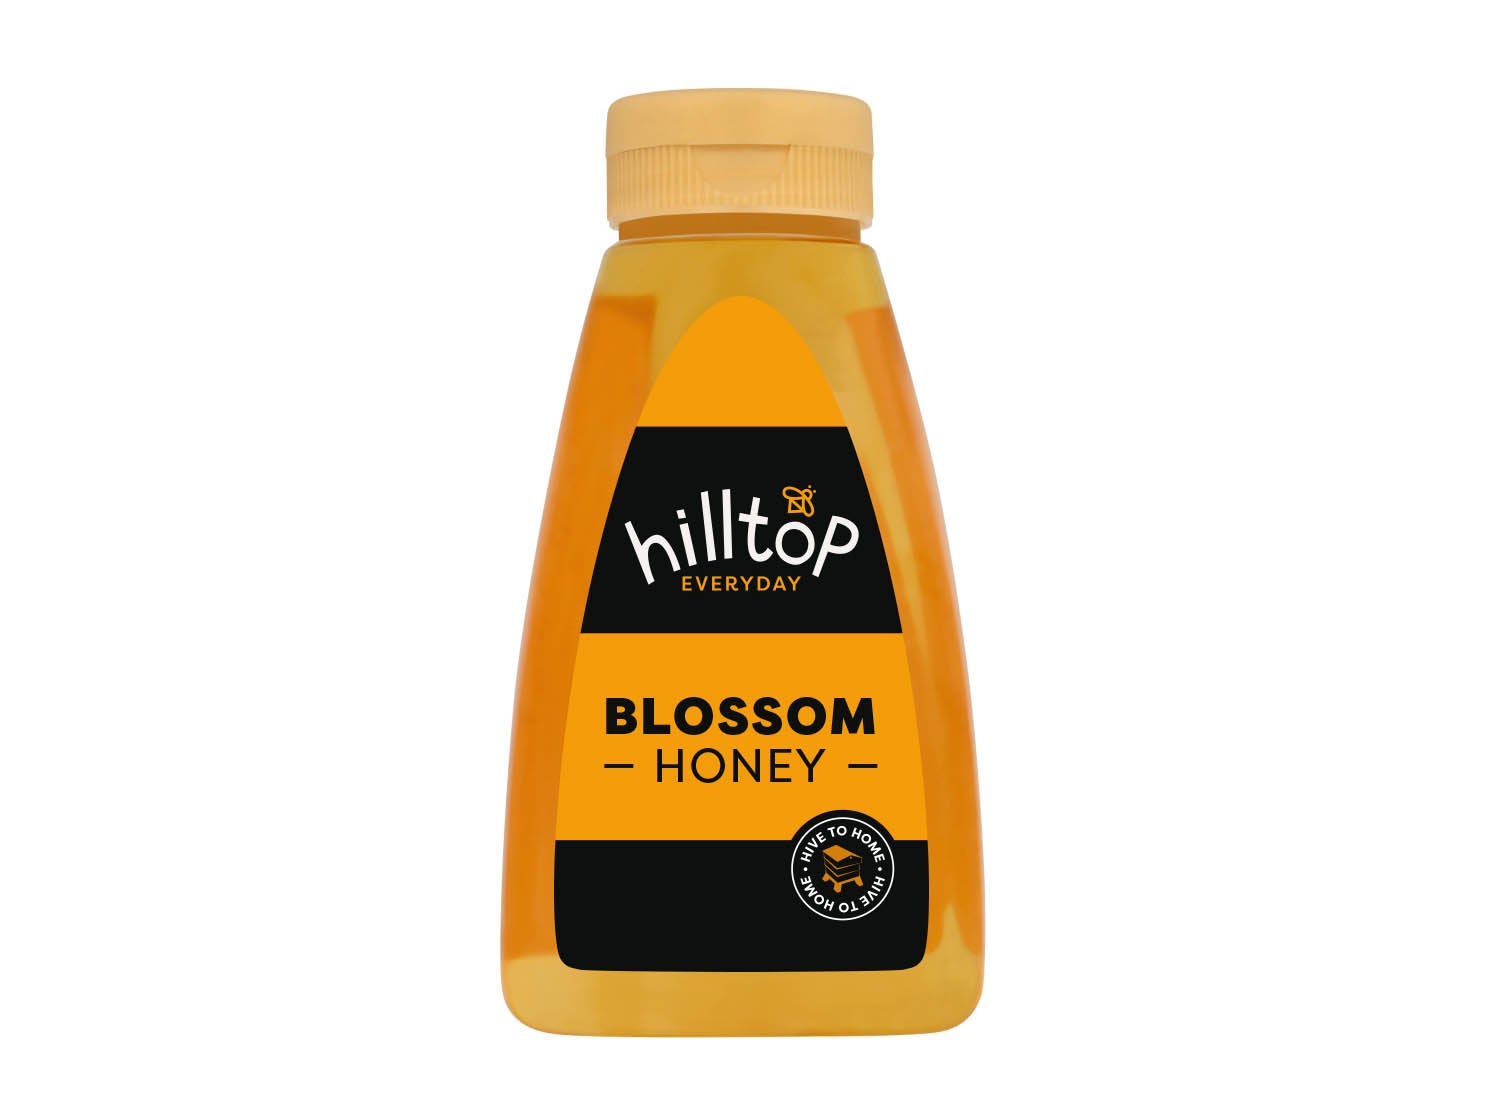 Hilltop blossom honey.jpg